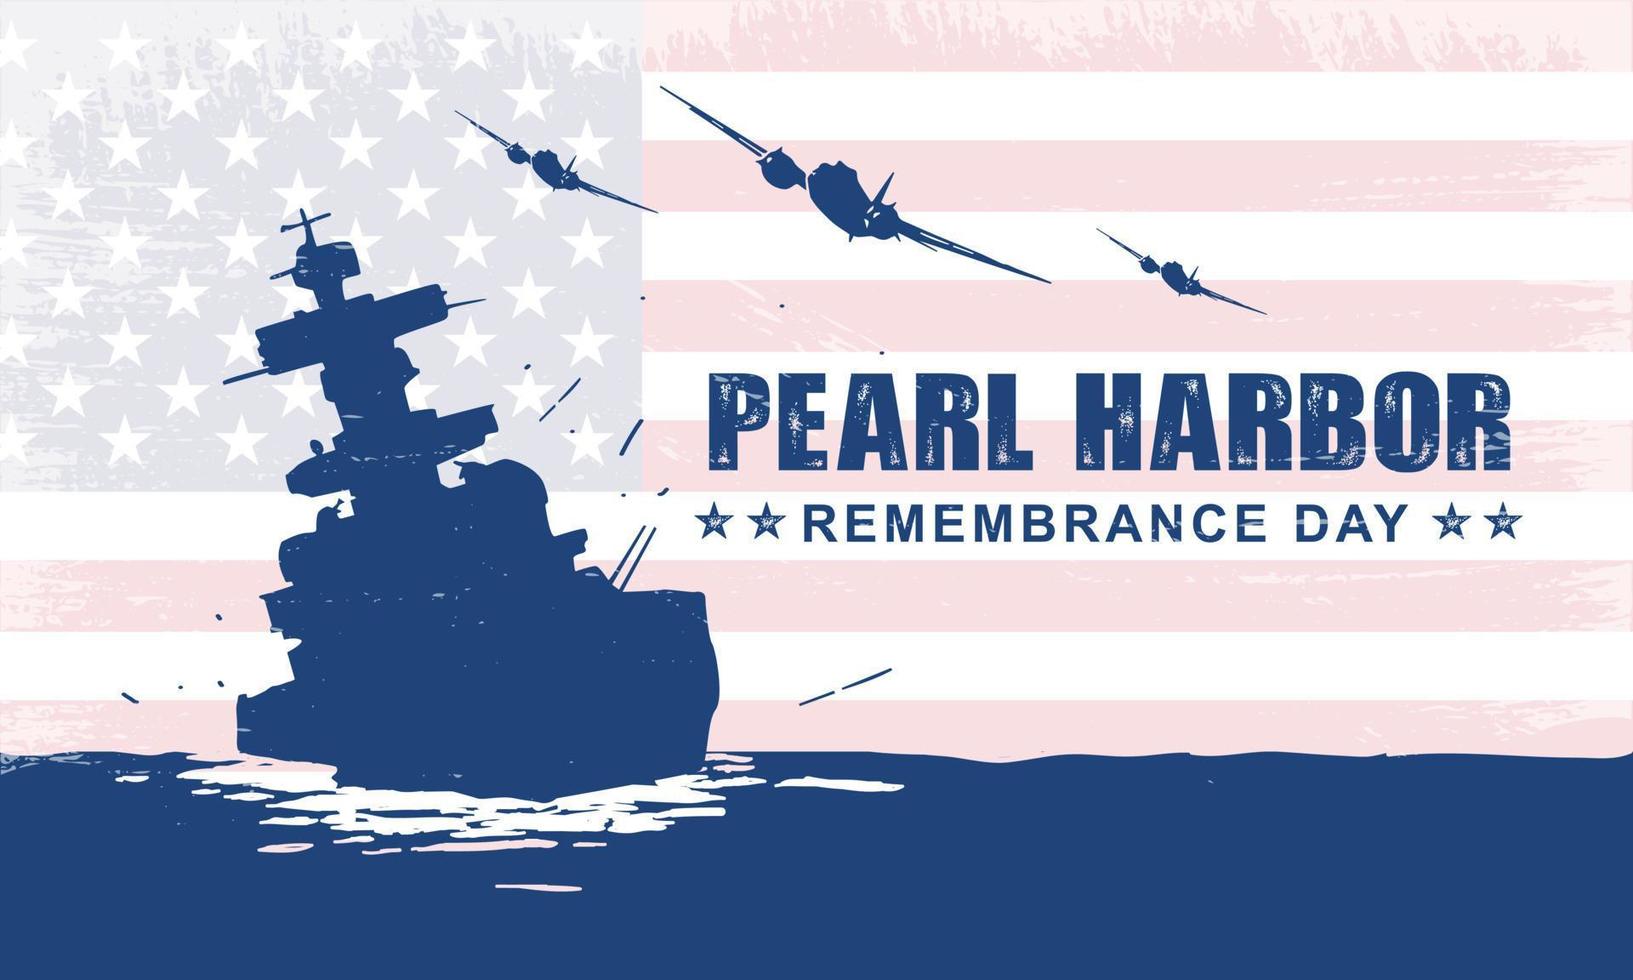 antecedentes del día del recuerdo de Pearl Harbor. ilustración vectorial vector